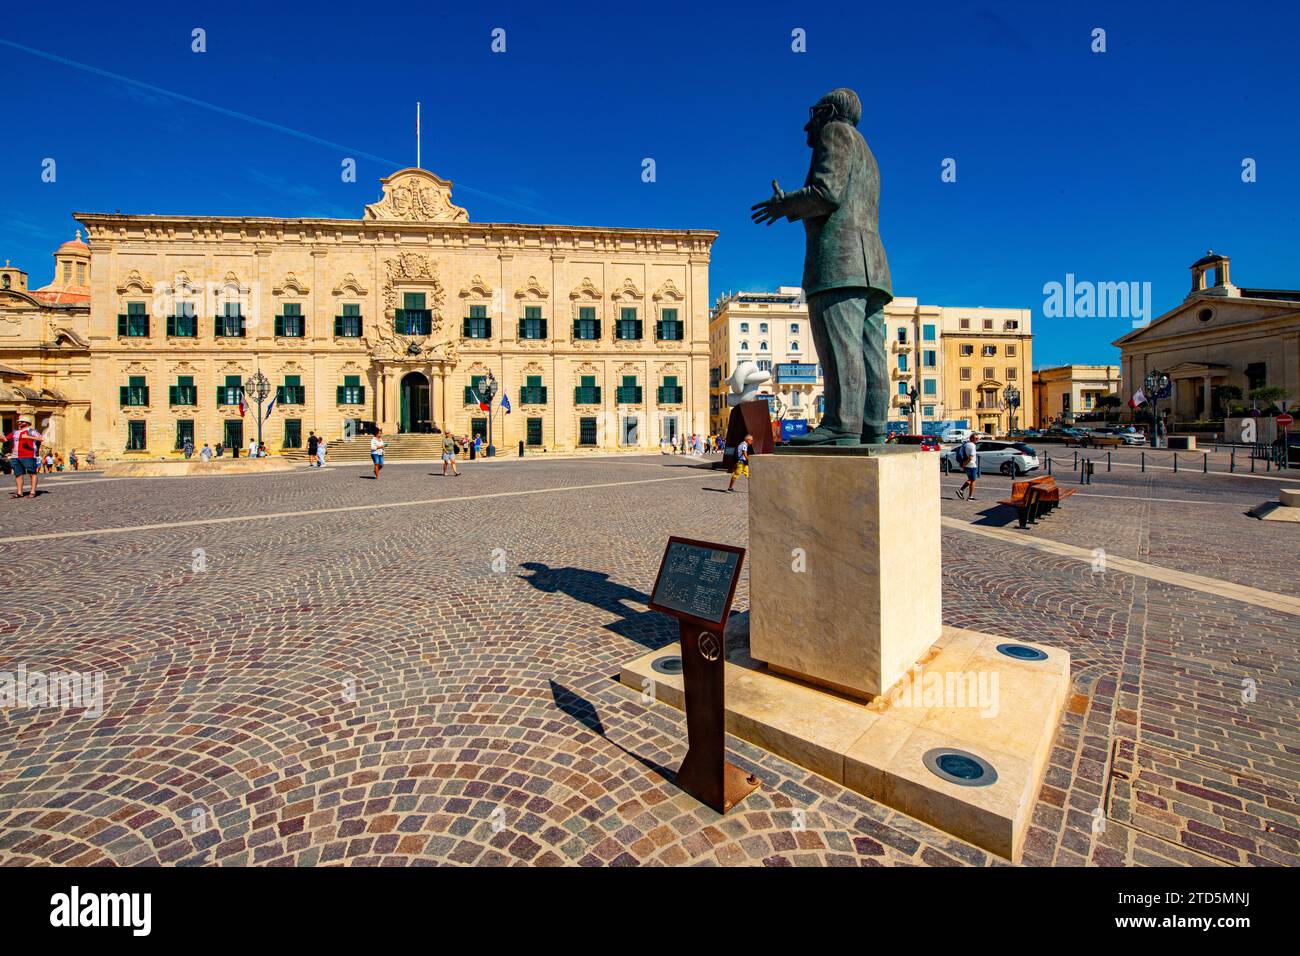 La statua in bronzo del 2018 di Noel Galea Bason del leader del partito laburista, Dom Mintoff, in Piazza Castiglia della Valletta, ottavo primo ministro di Malta. Foto Stock